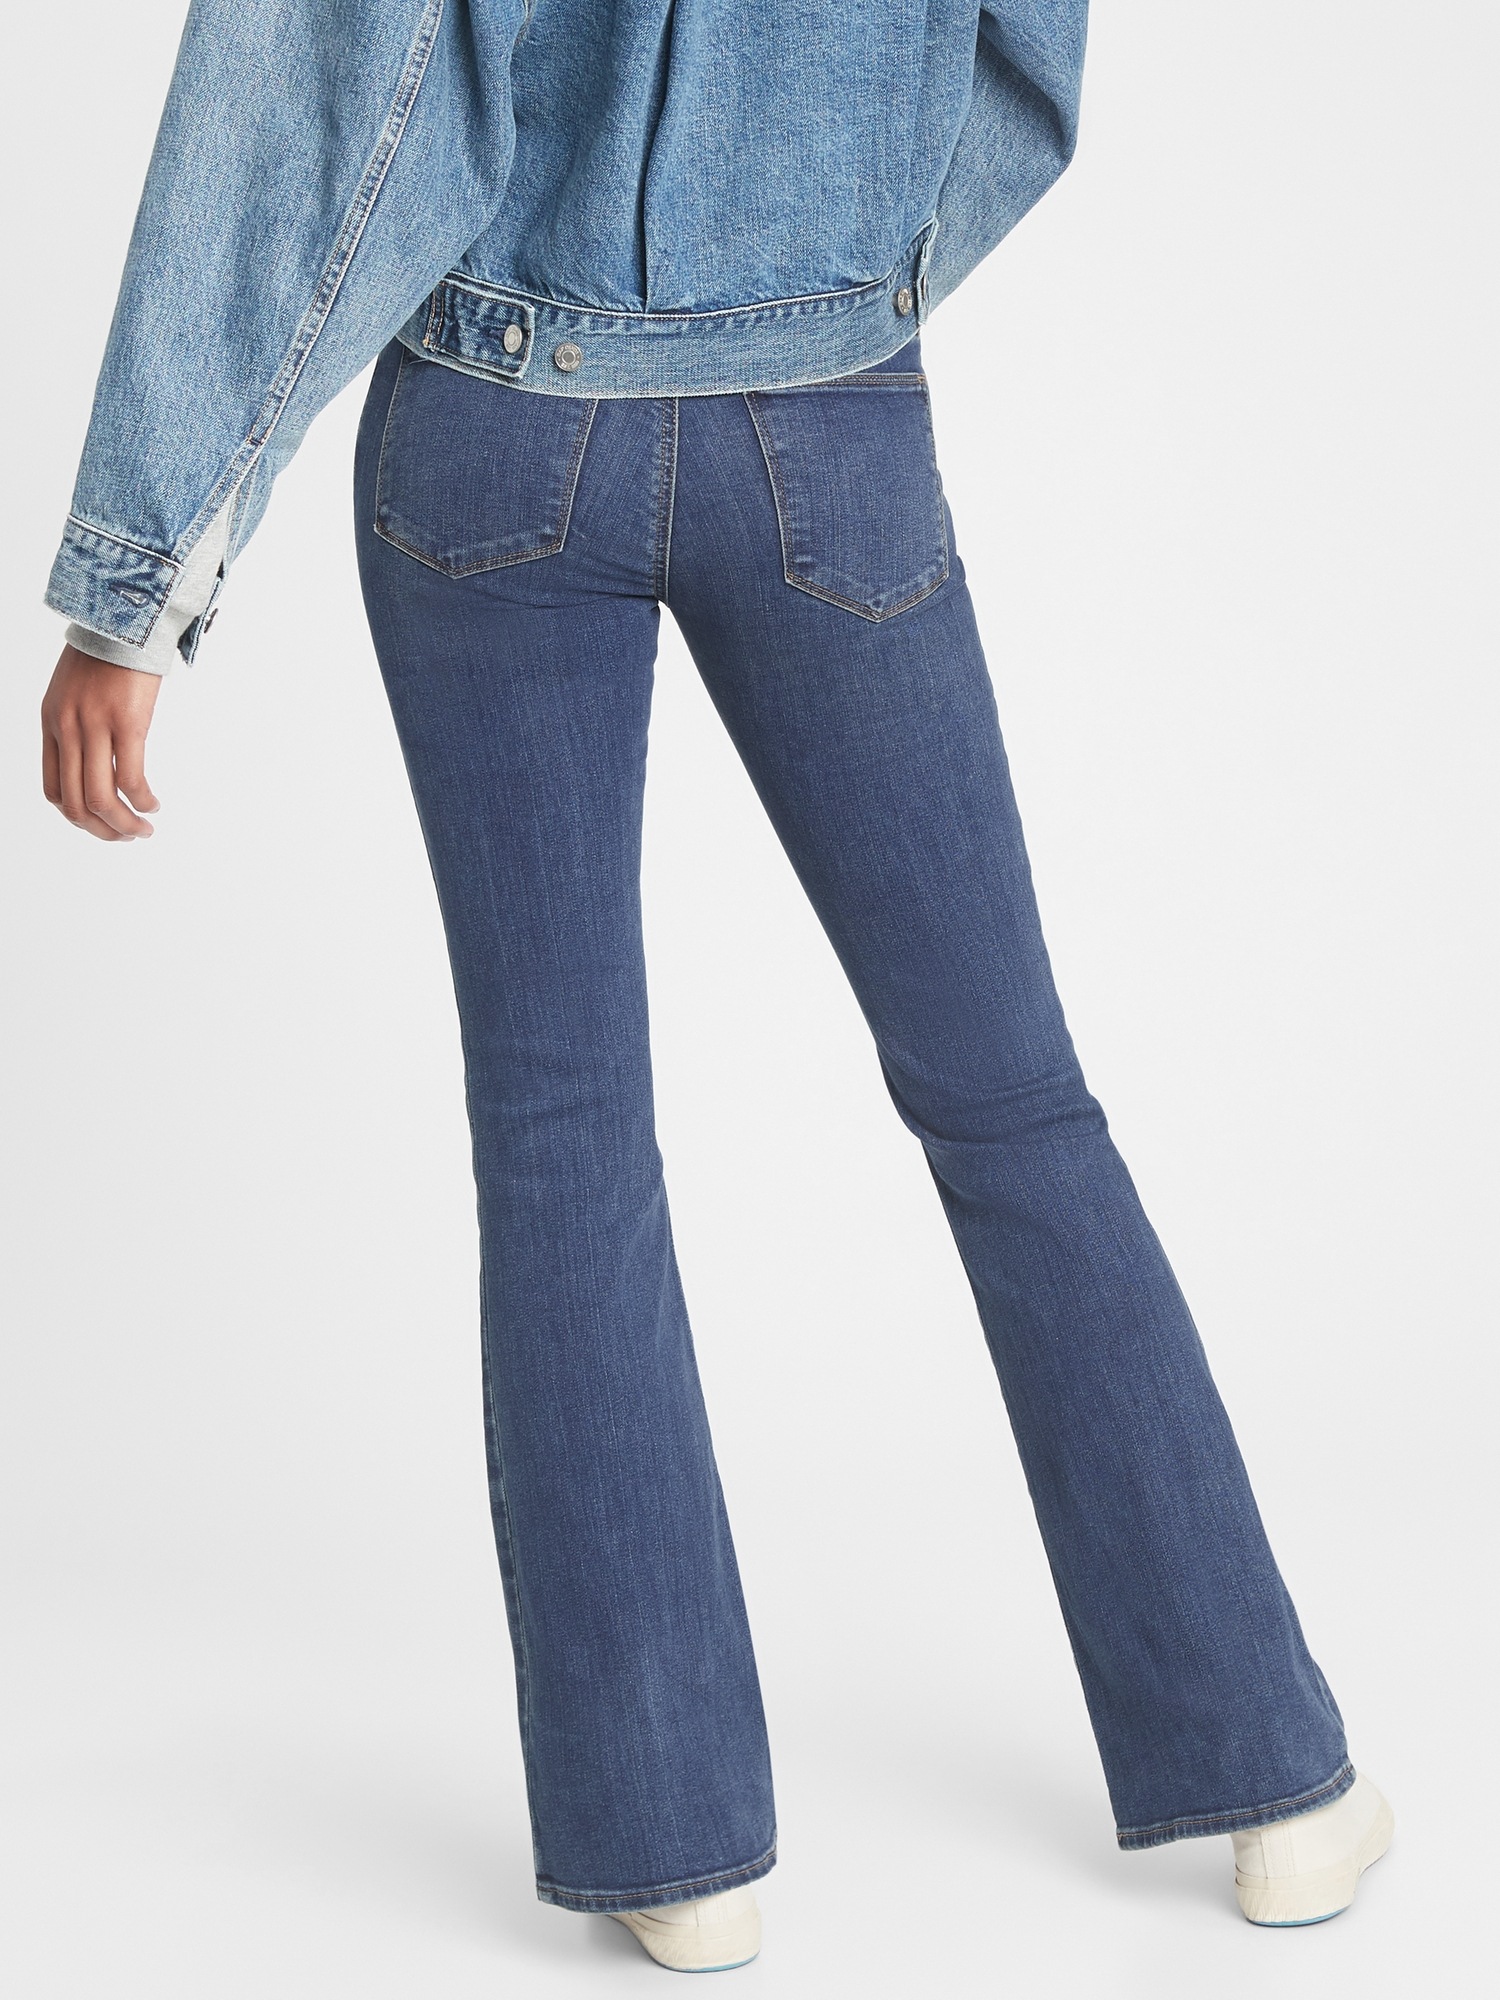 gap blue jeans